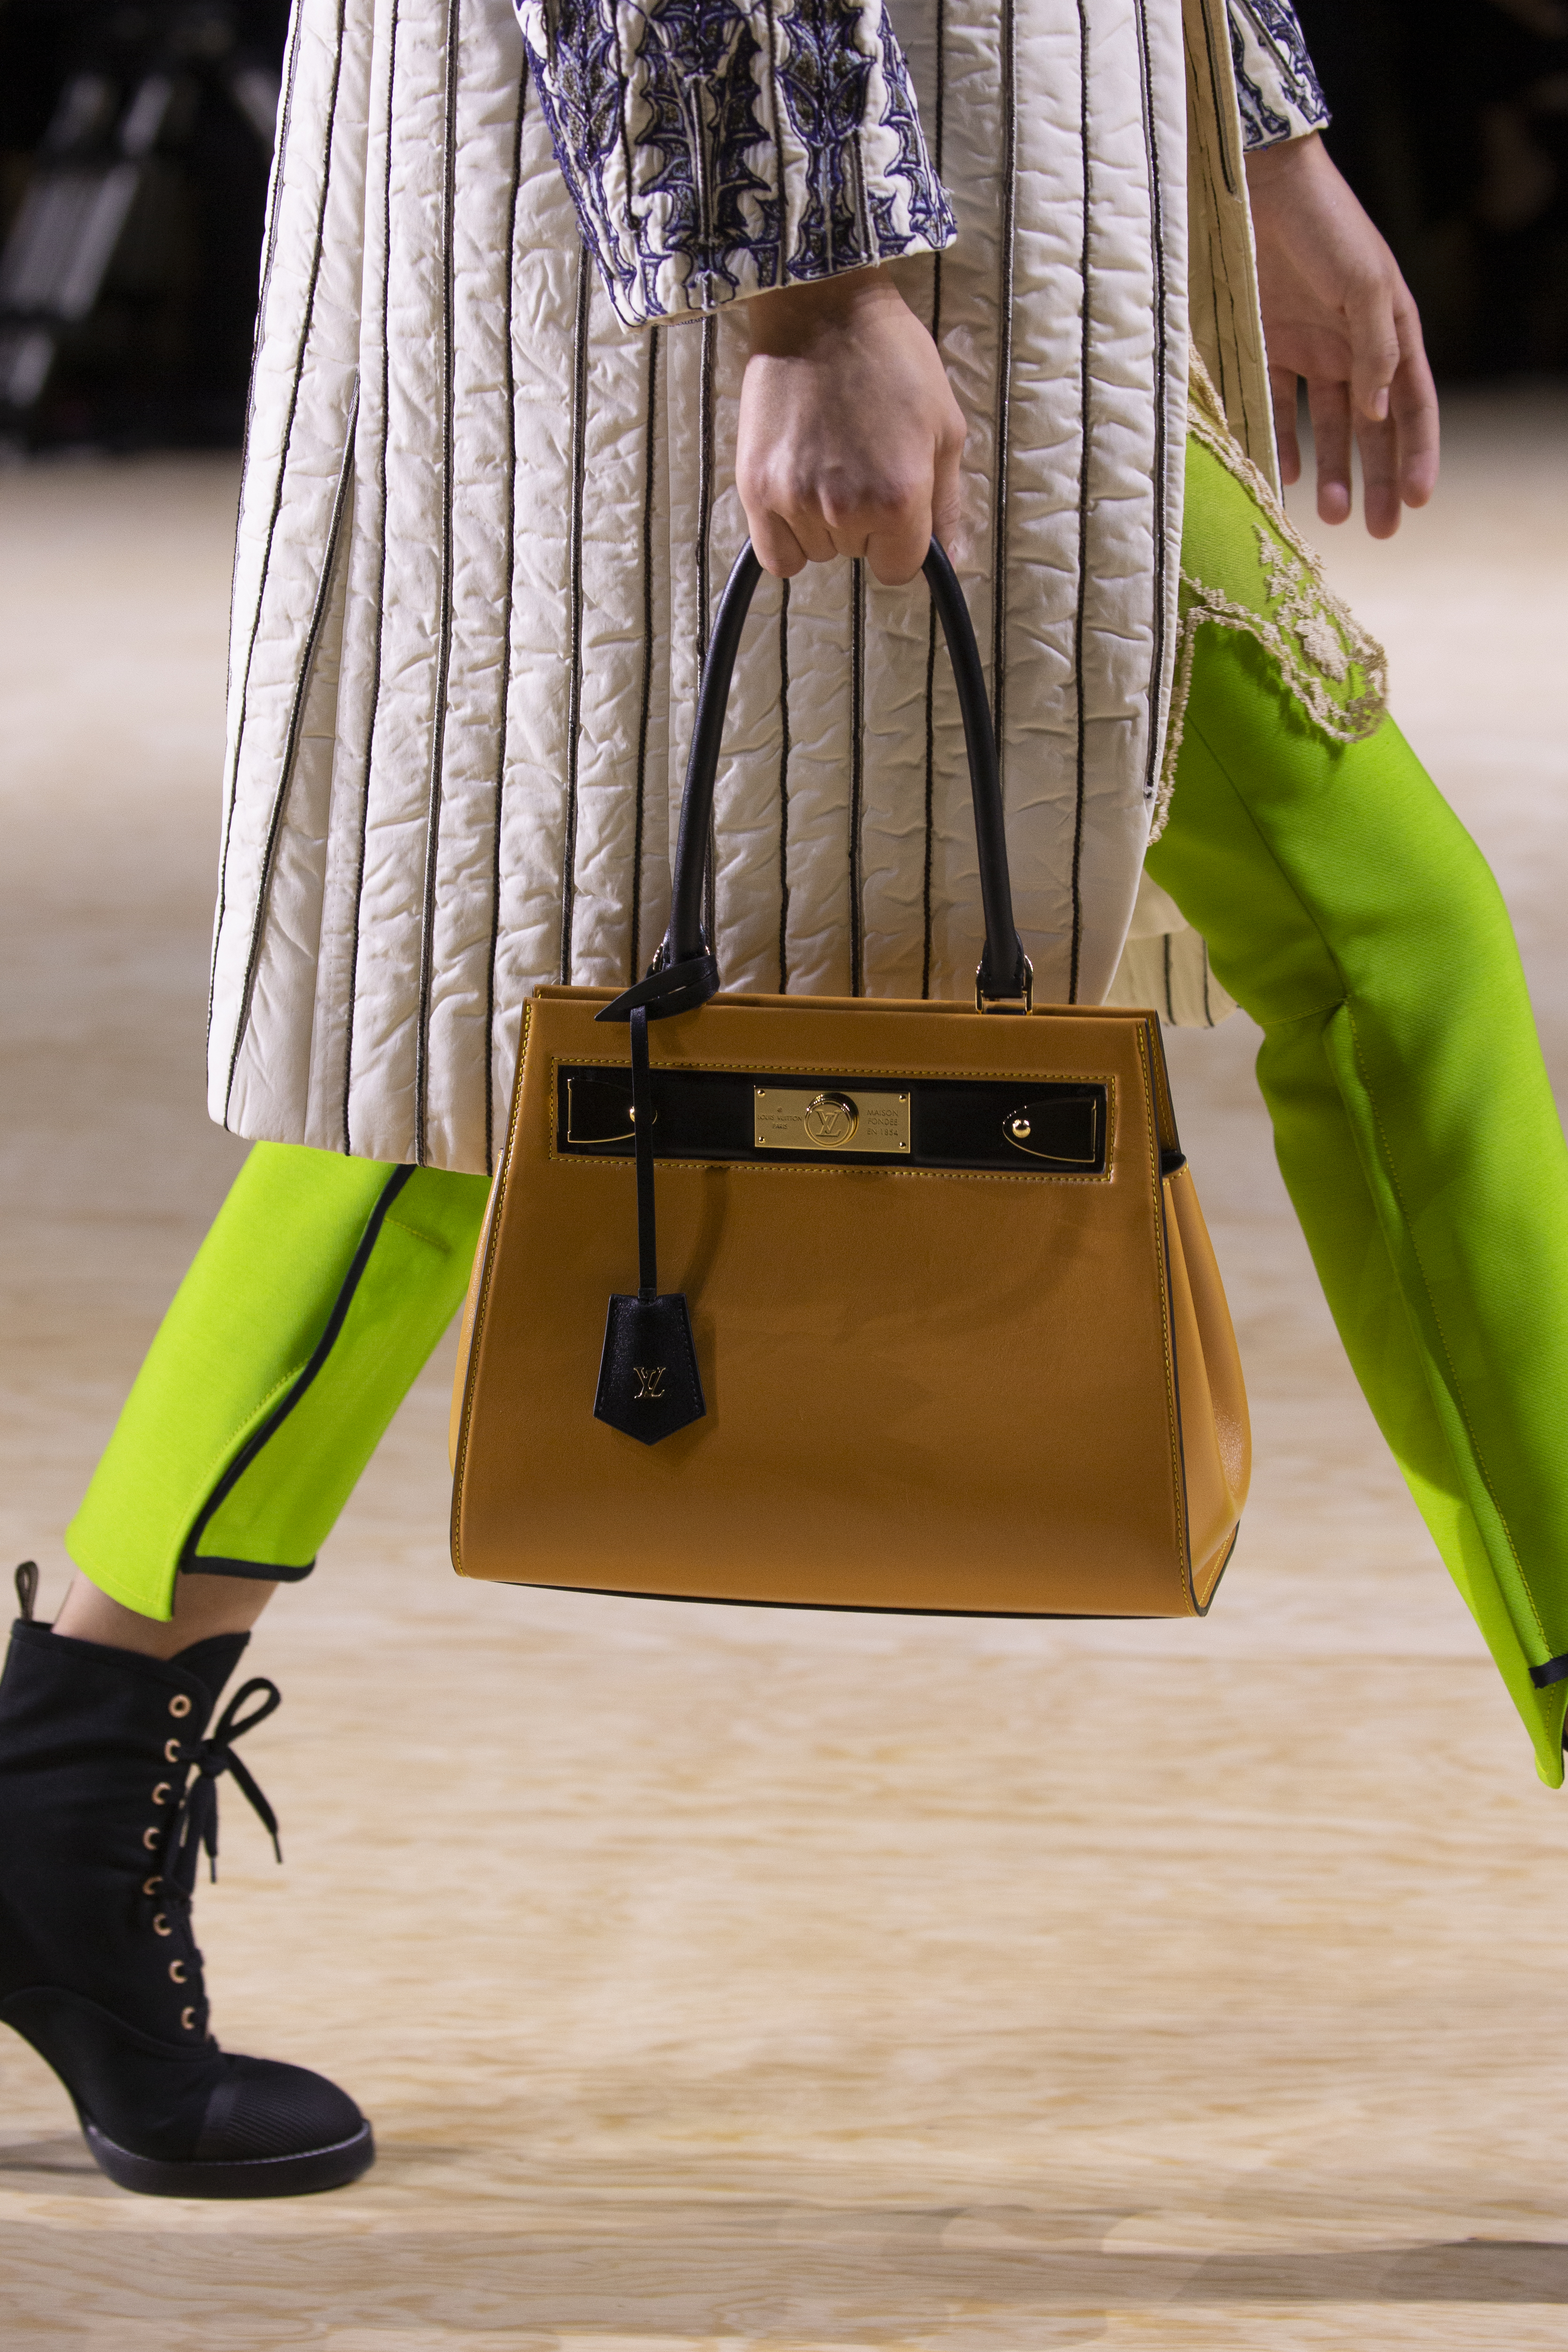 Zíperes enormes e bolsas exageradas em desfile da Louis Vuitton em Paris -  Folha PE